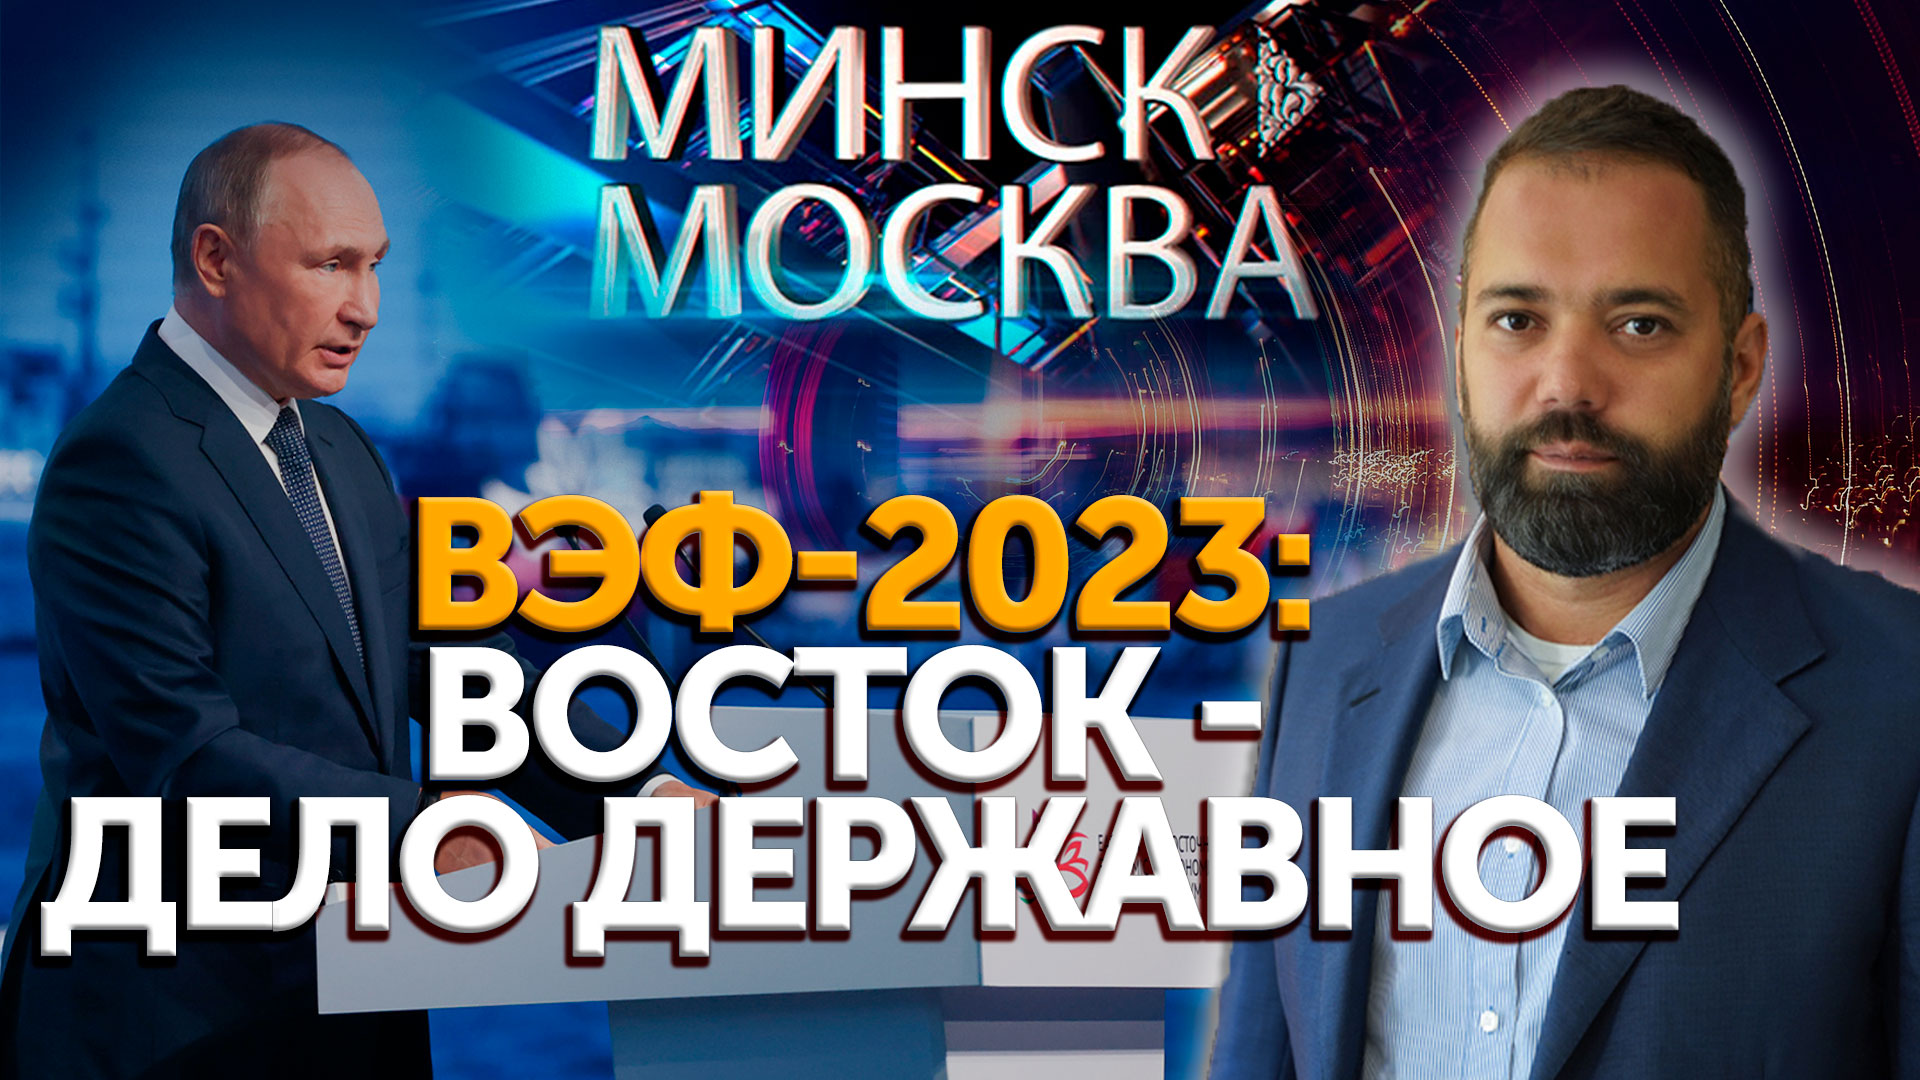 Минск-Москва | ВЭФ-2023: Восток - дело державное